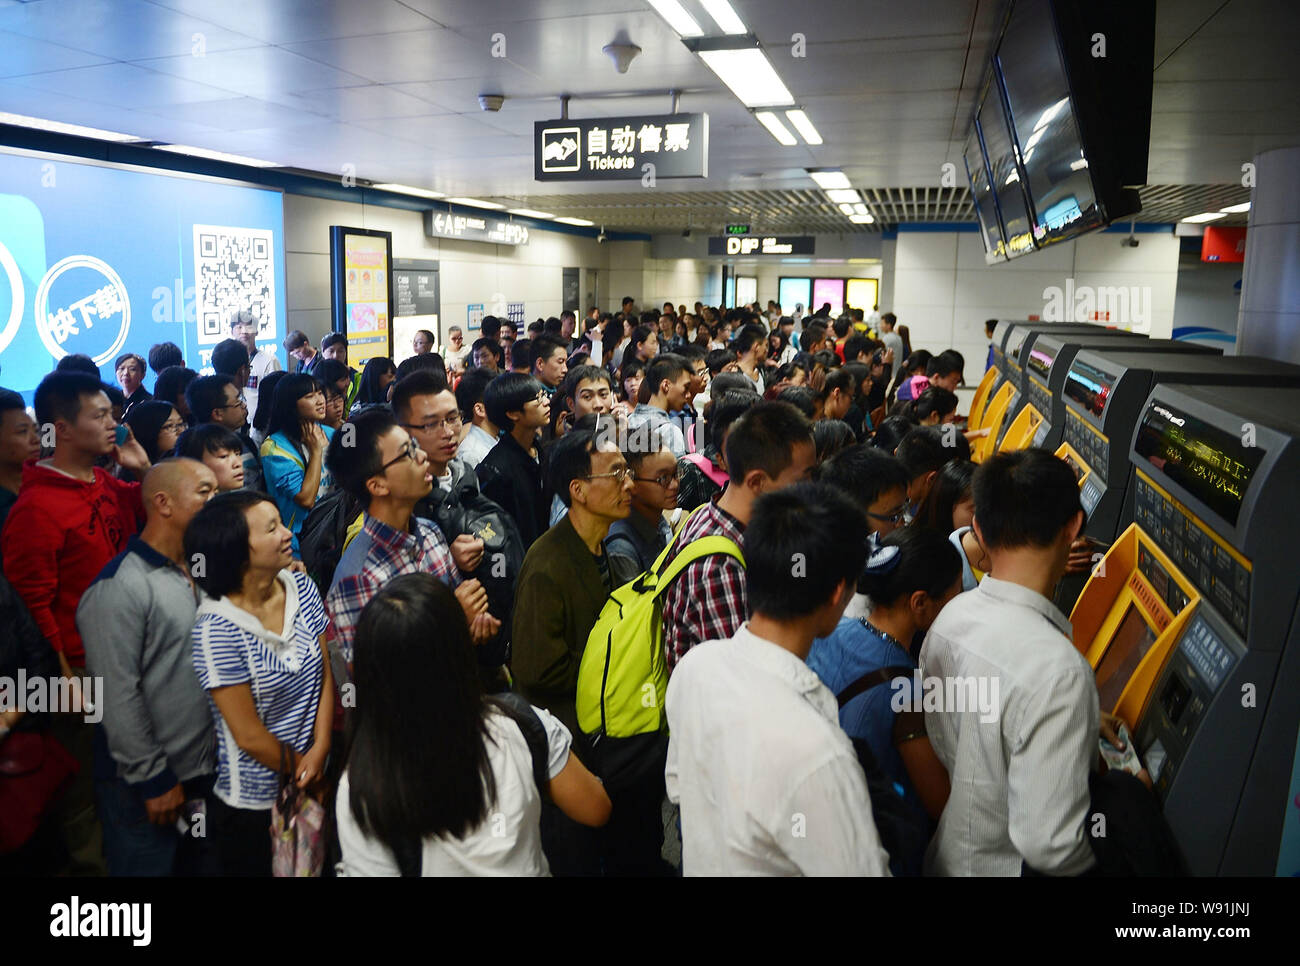 La Folla di passeggeri attendere fino al bordo in corrispondenza di una stazione ferroviaria in Chengsu, southwest Chinas nella provincia di Sichuan, 1 ottobre 2013. Chinas ferrovie portato una rec Foto Stock